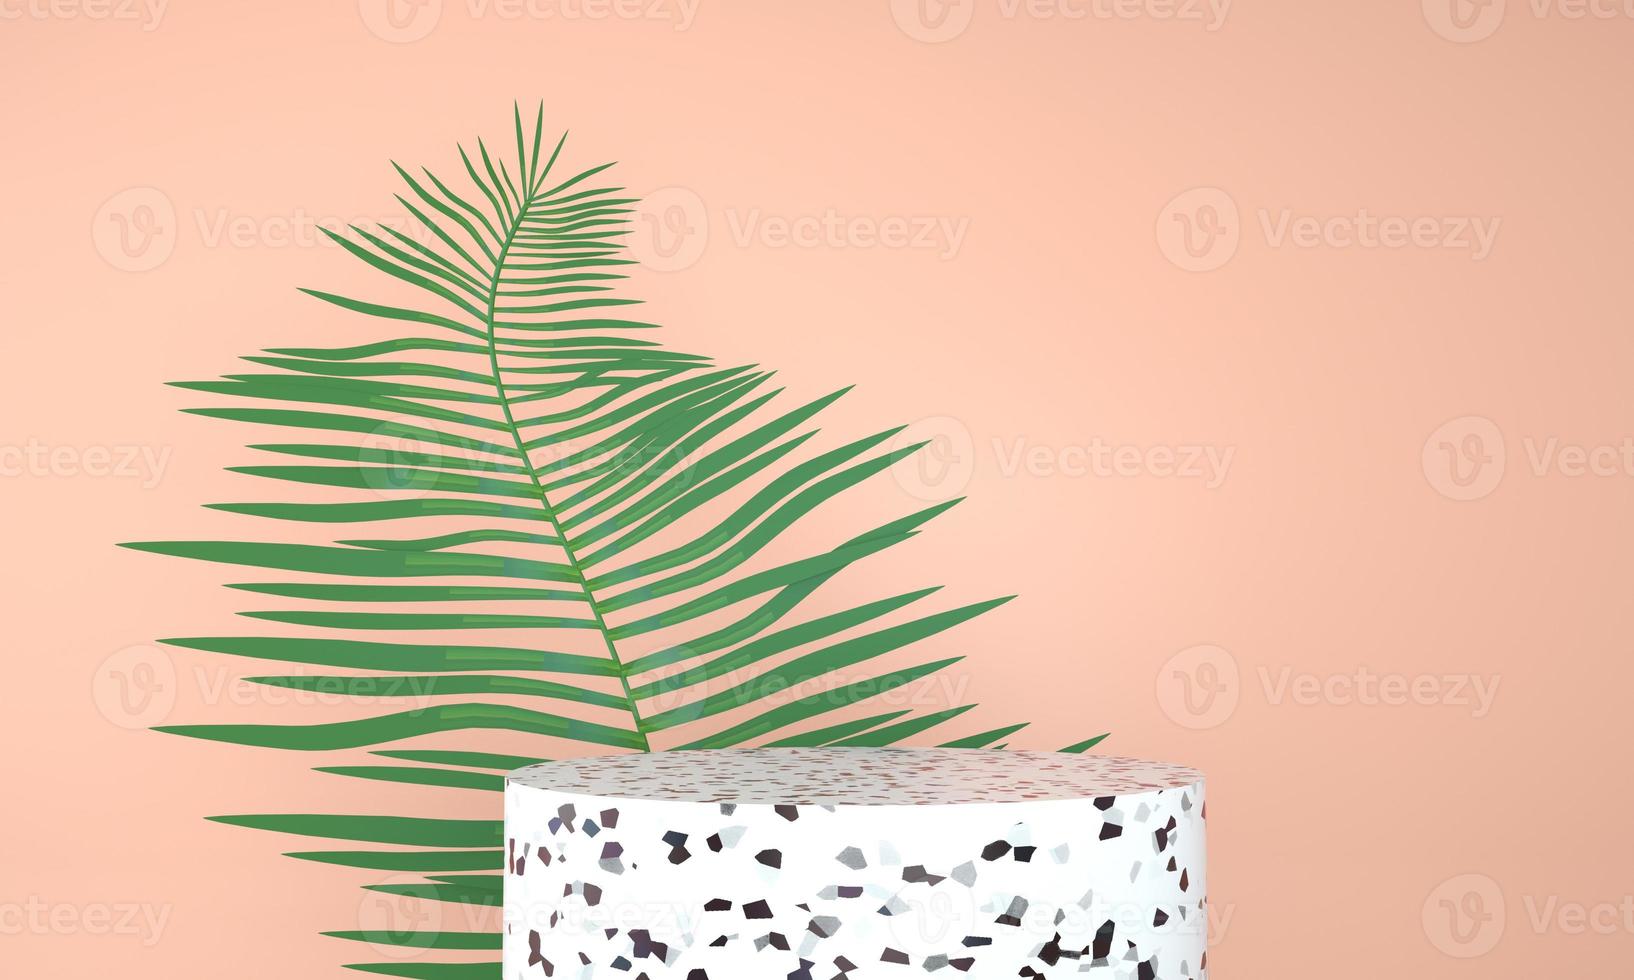 Podio de exhibición de productos decorado con hojas sobre fondo pastel, ilustración 3d foto